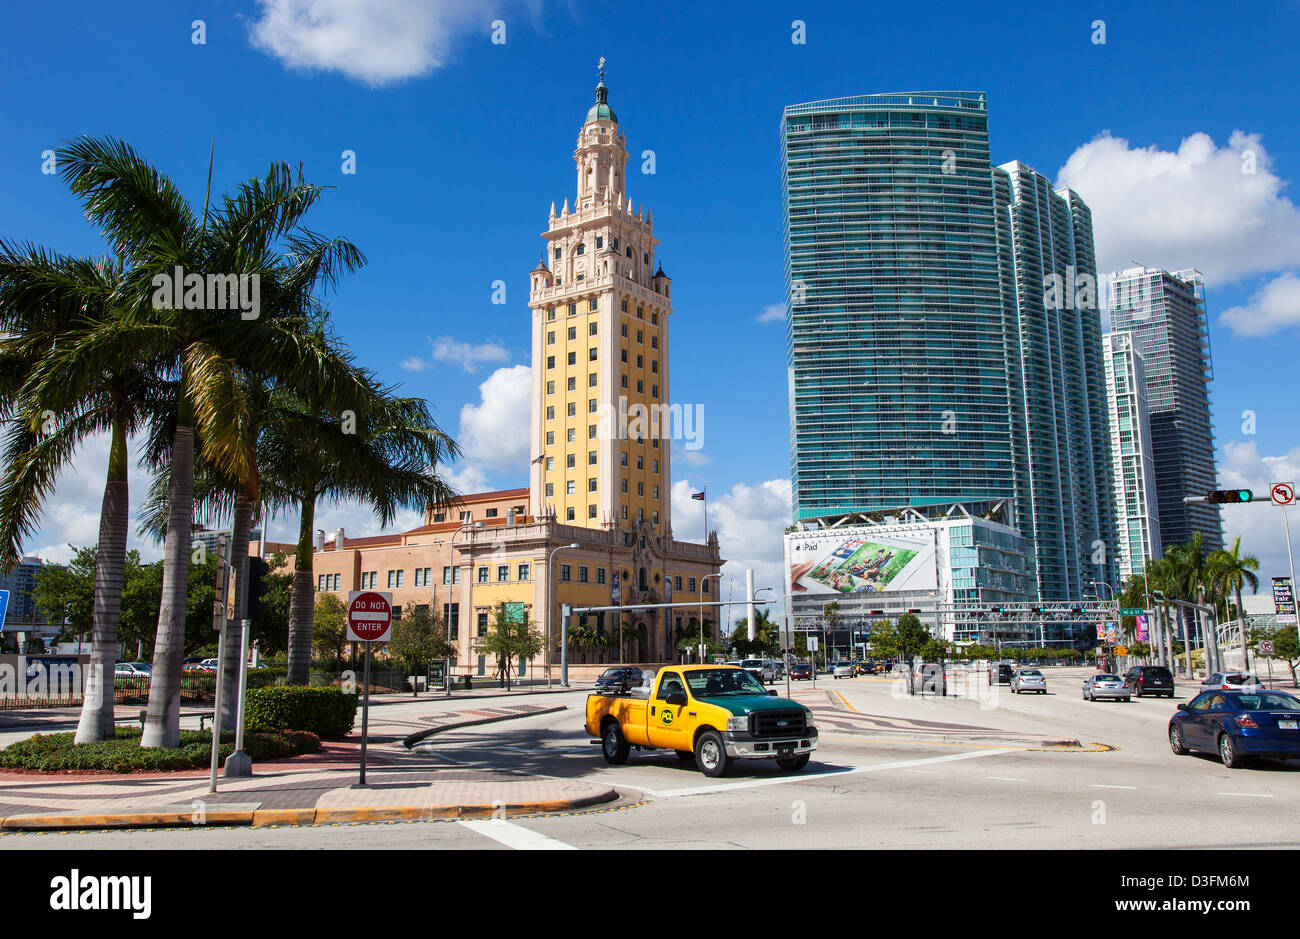 La tour de la liberté dans le centre-ville de Miami, USA Banque D'Images